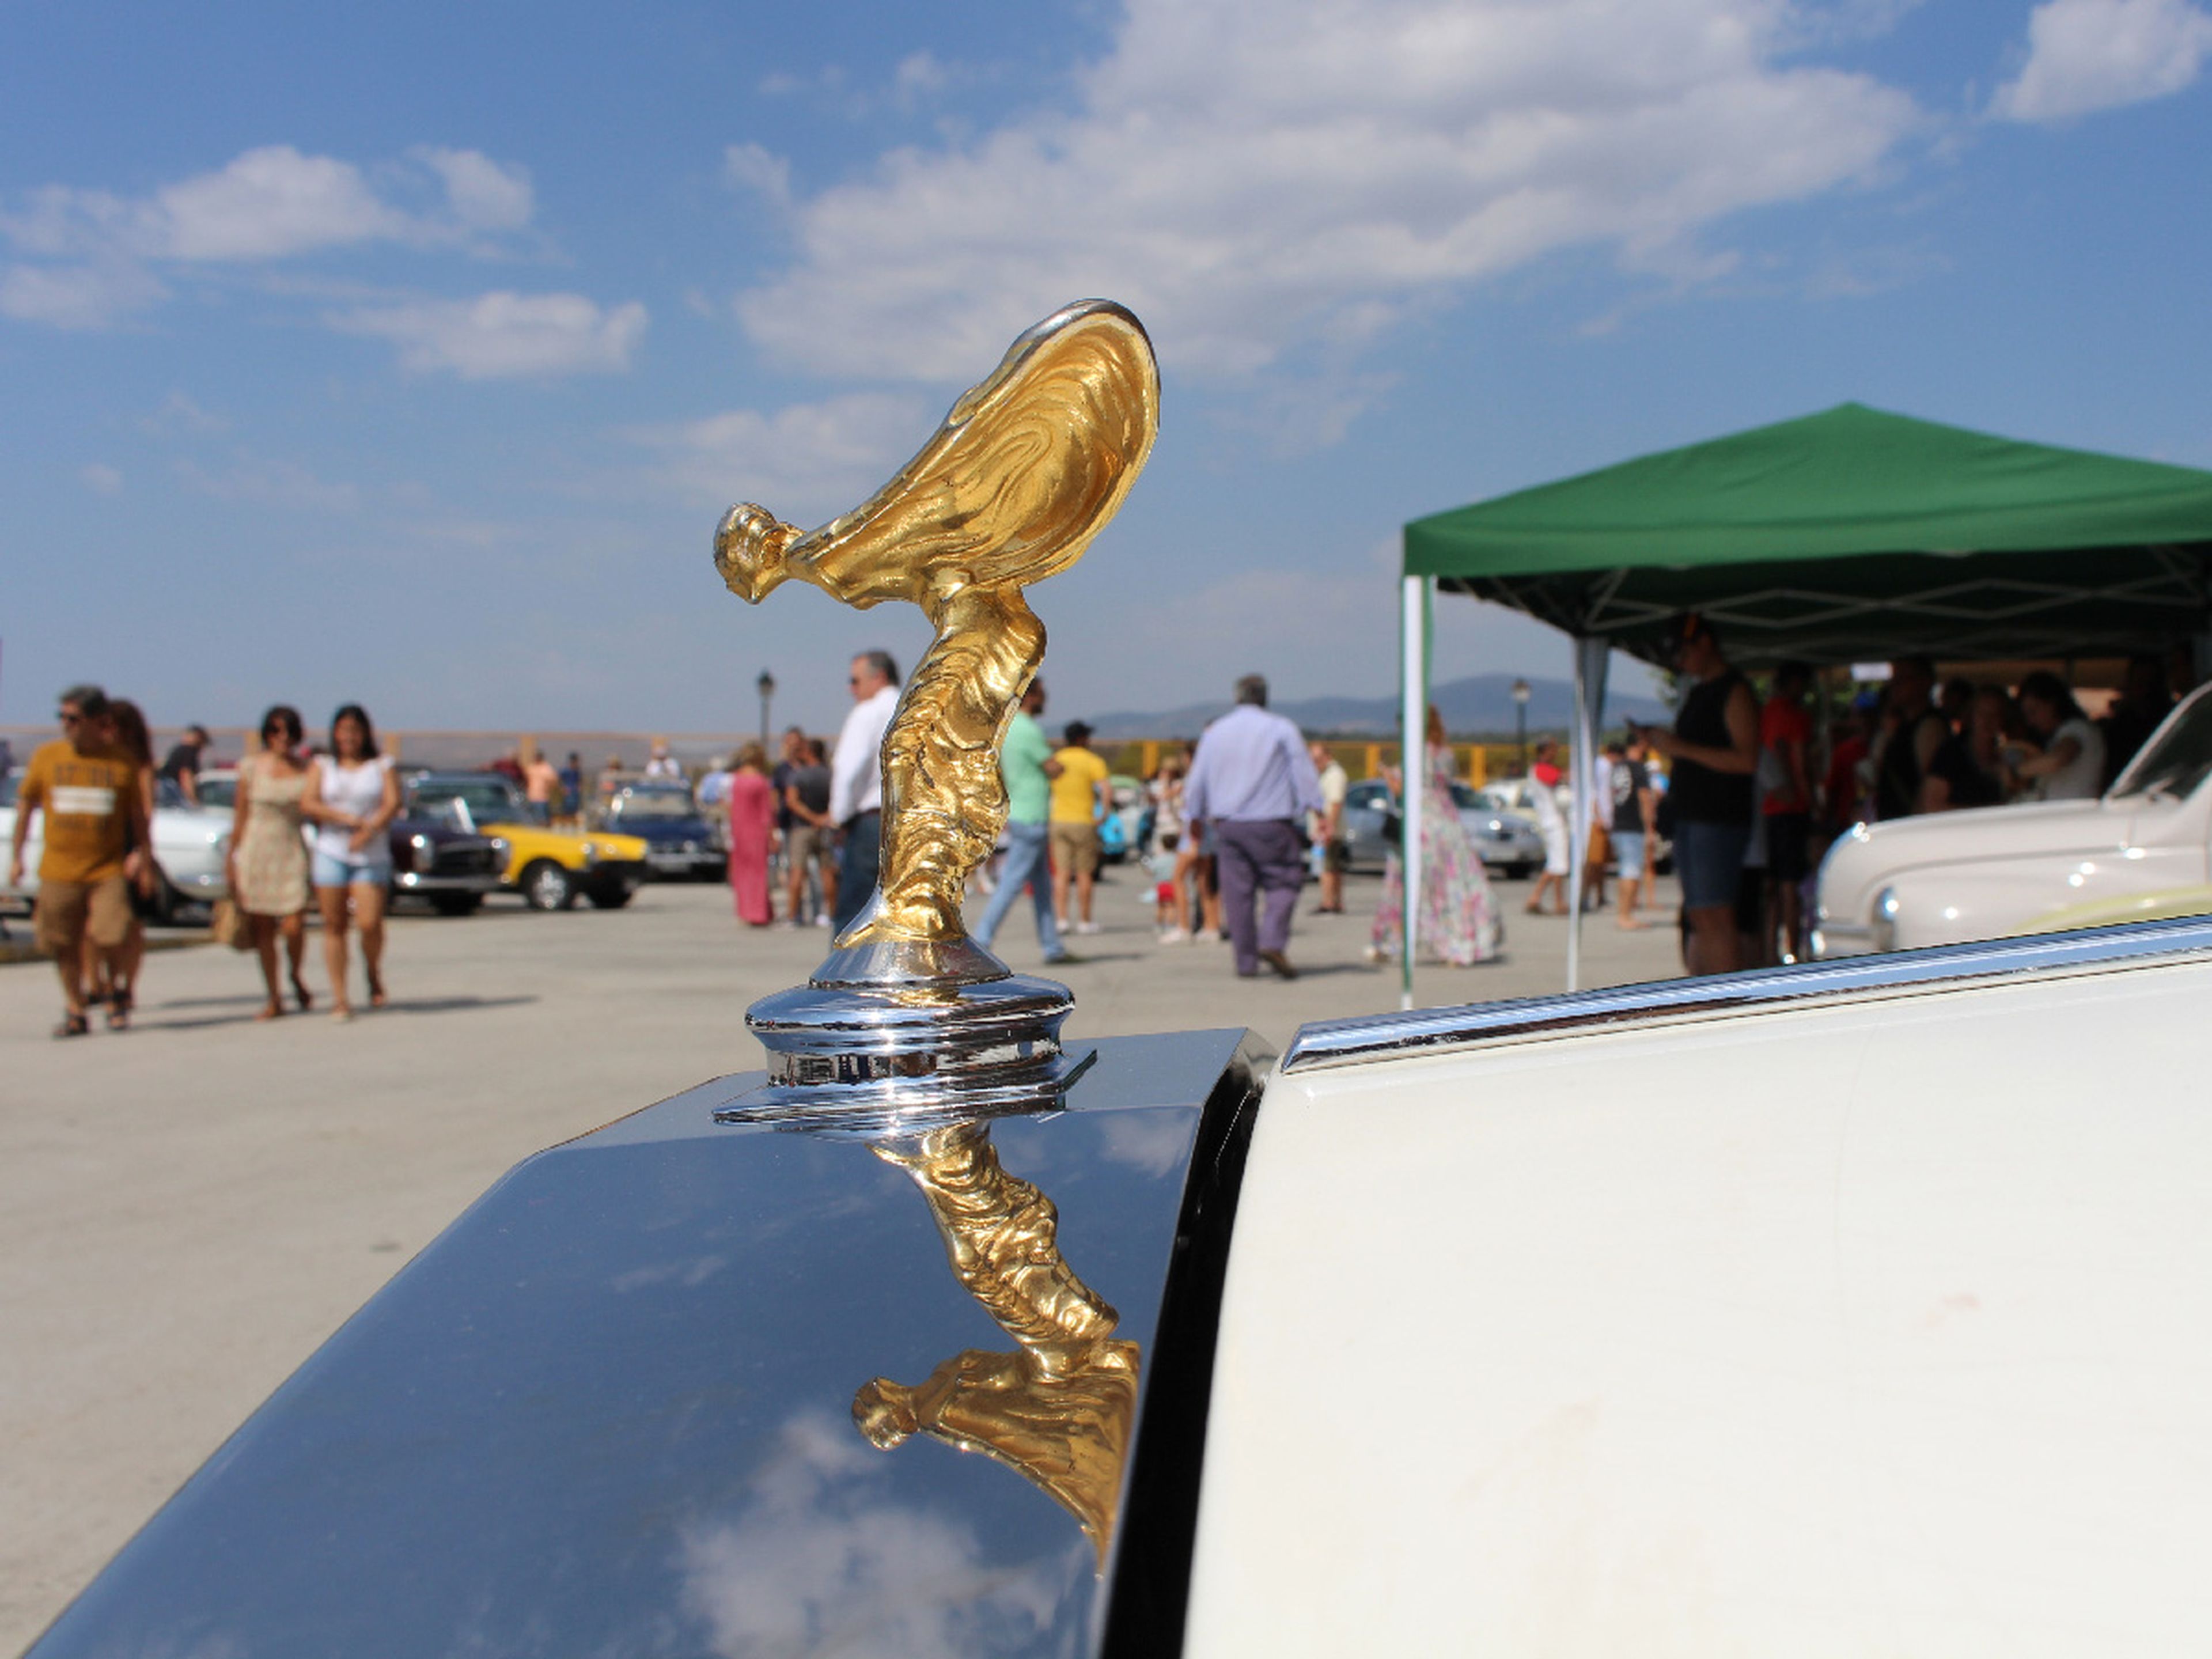 El 'Espíritu del Éxtasis' bañado en oro en uno de los dos Rolls-Royce de la concentración.